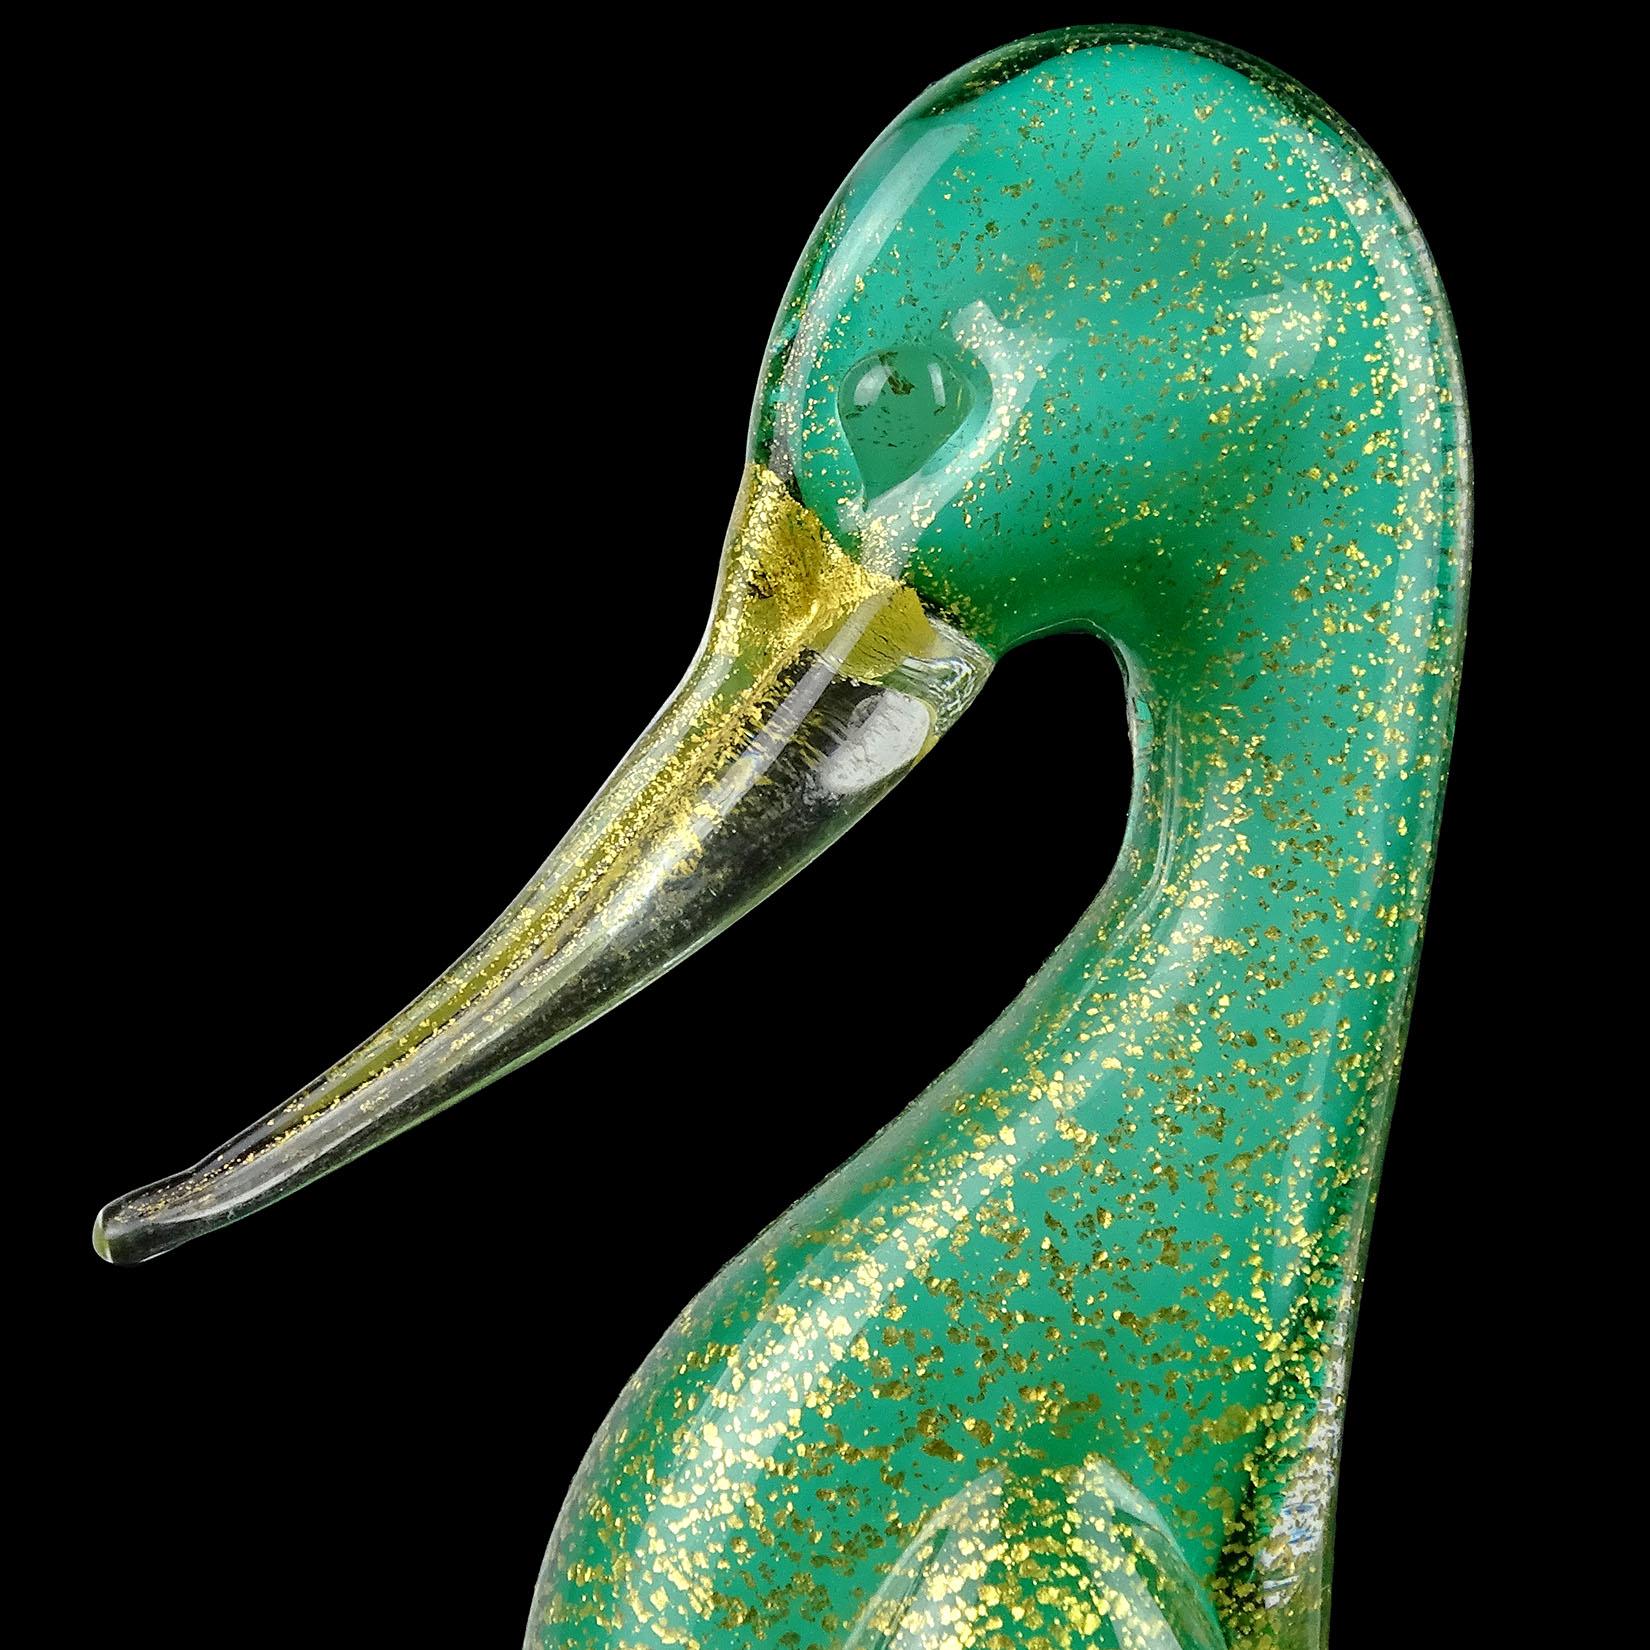 Schöne Vintage Murano mundgeblasenen grünen und goldenen Flecken italienische Kunst Glas Ente Vogel-Figur / Skulptur. Archimede Seguso / Seguso Vetri D' Arte zugeschrieben. Der Vogel besteht aus einer weißen Innenschicht, einer grünen Außenschicht